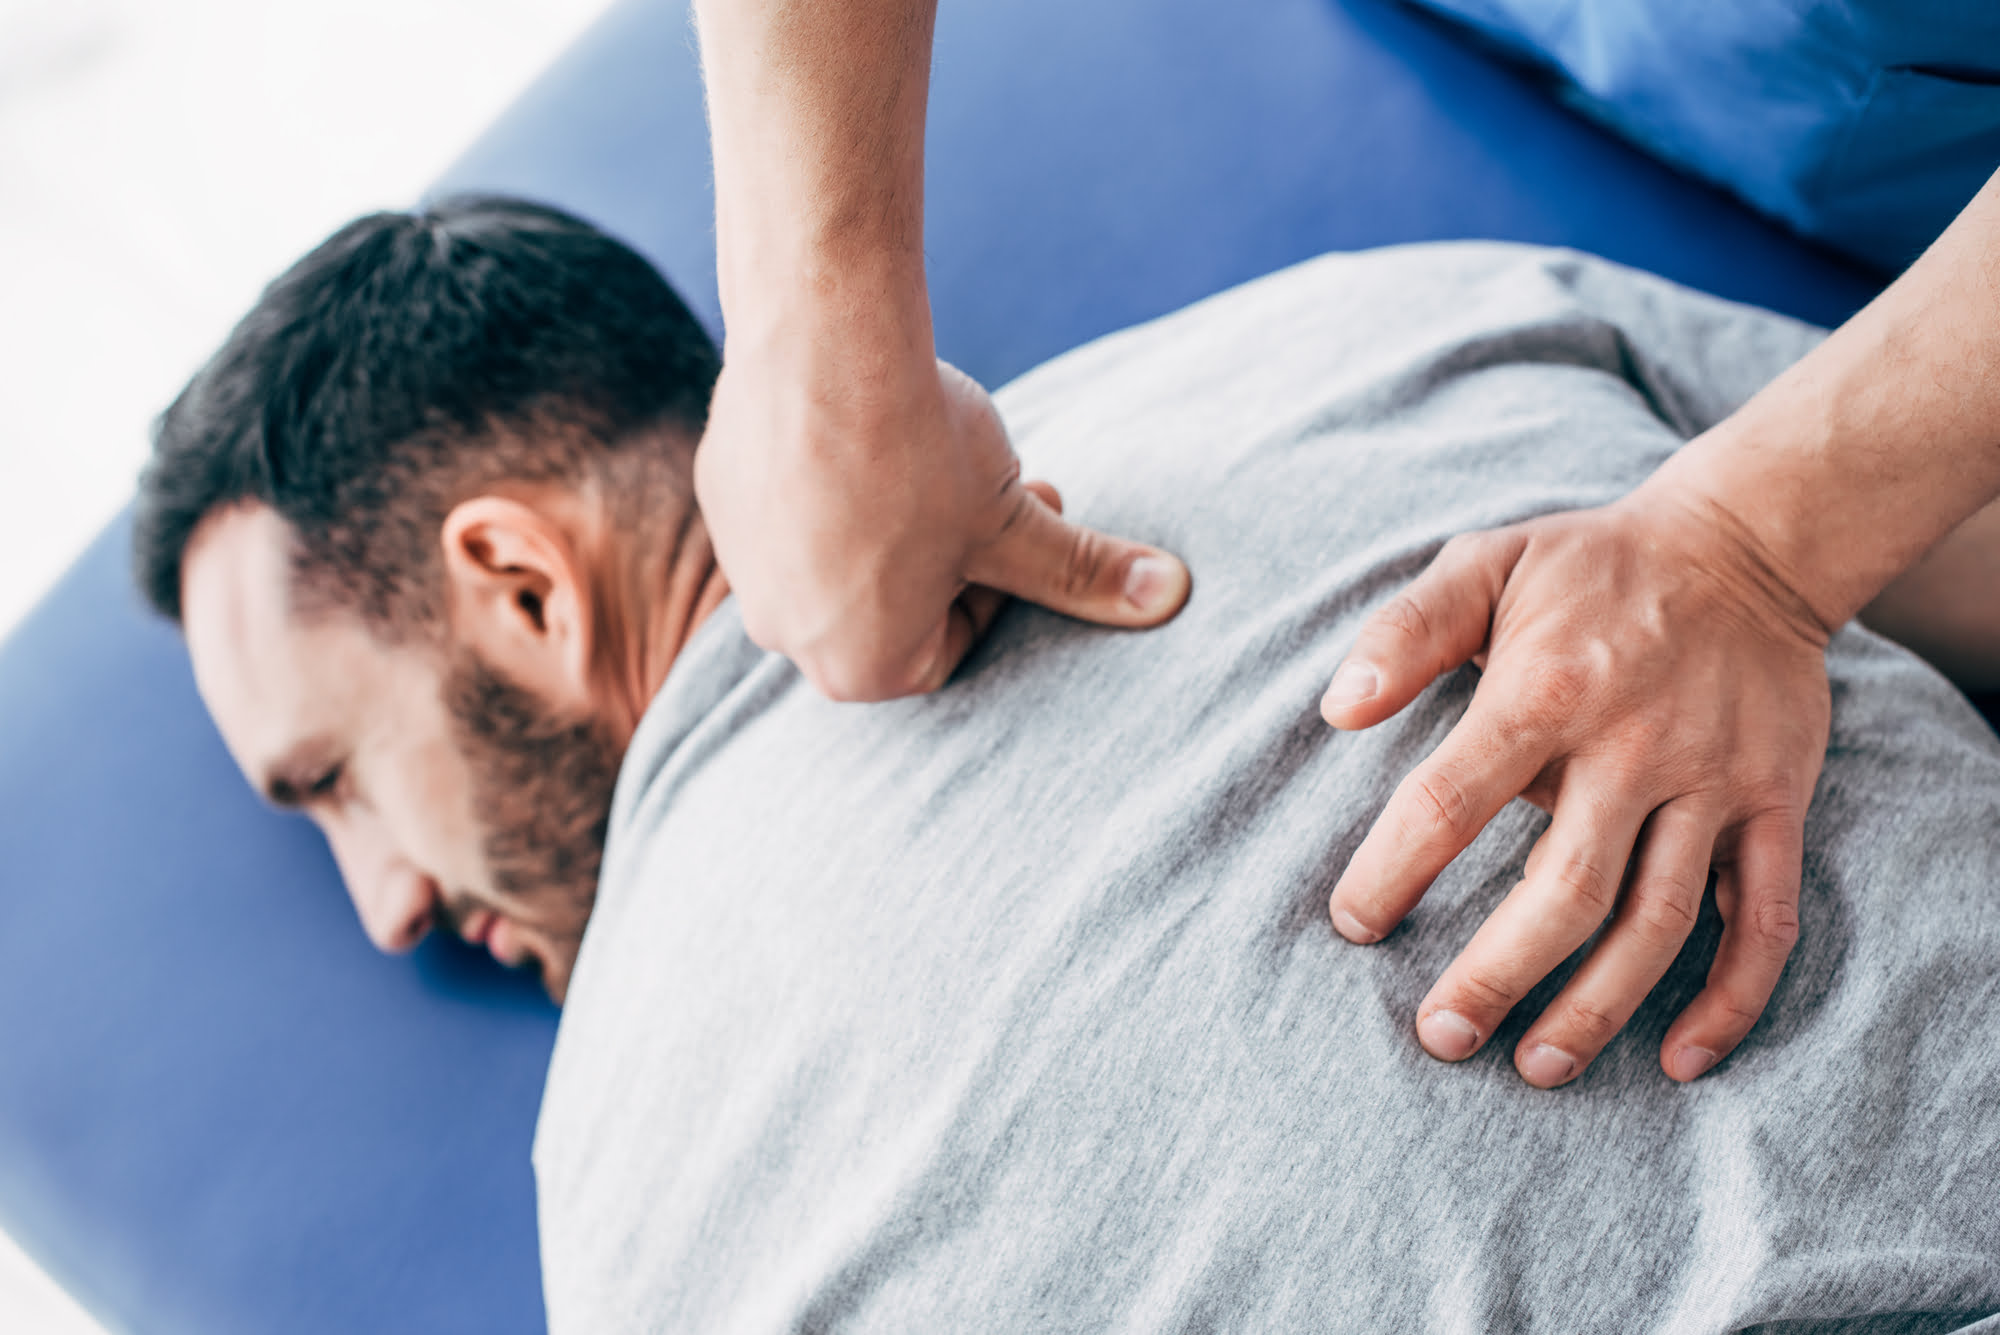 Man receiving back massage treatment on osteopath mat